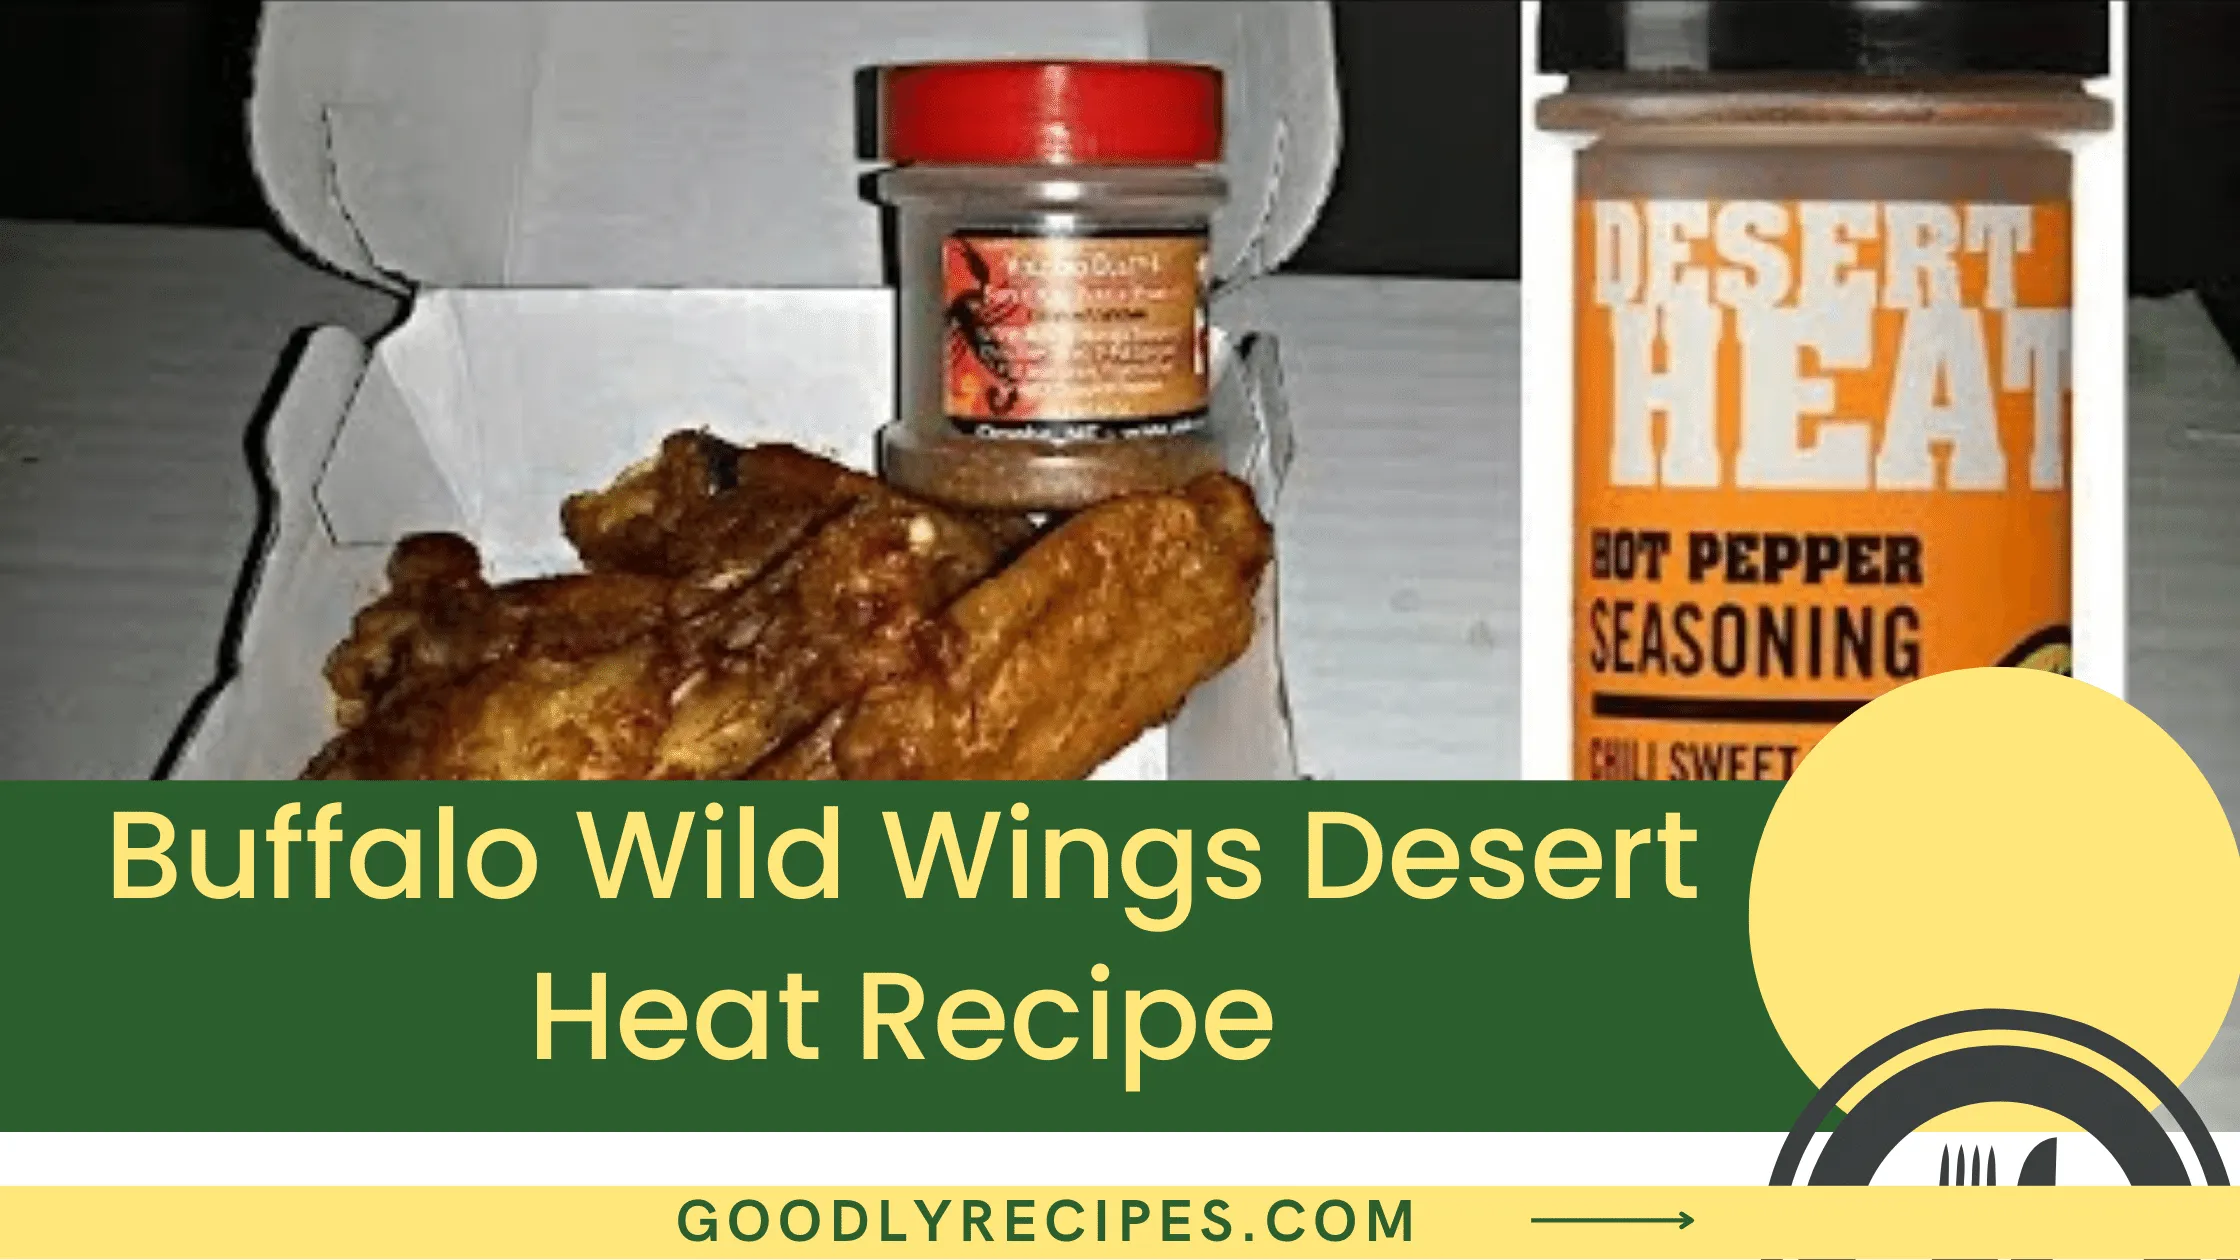 What is Buffalo Wild Wings Desert Heat?